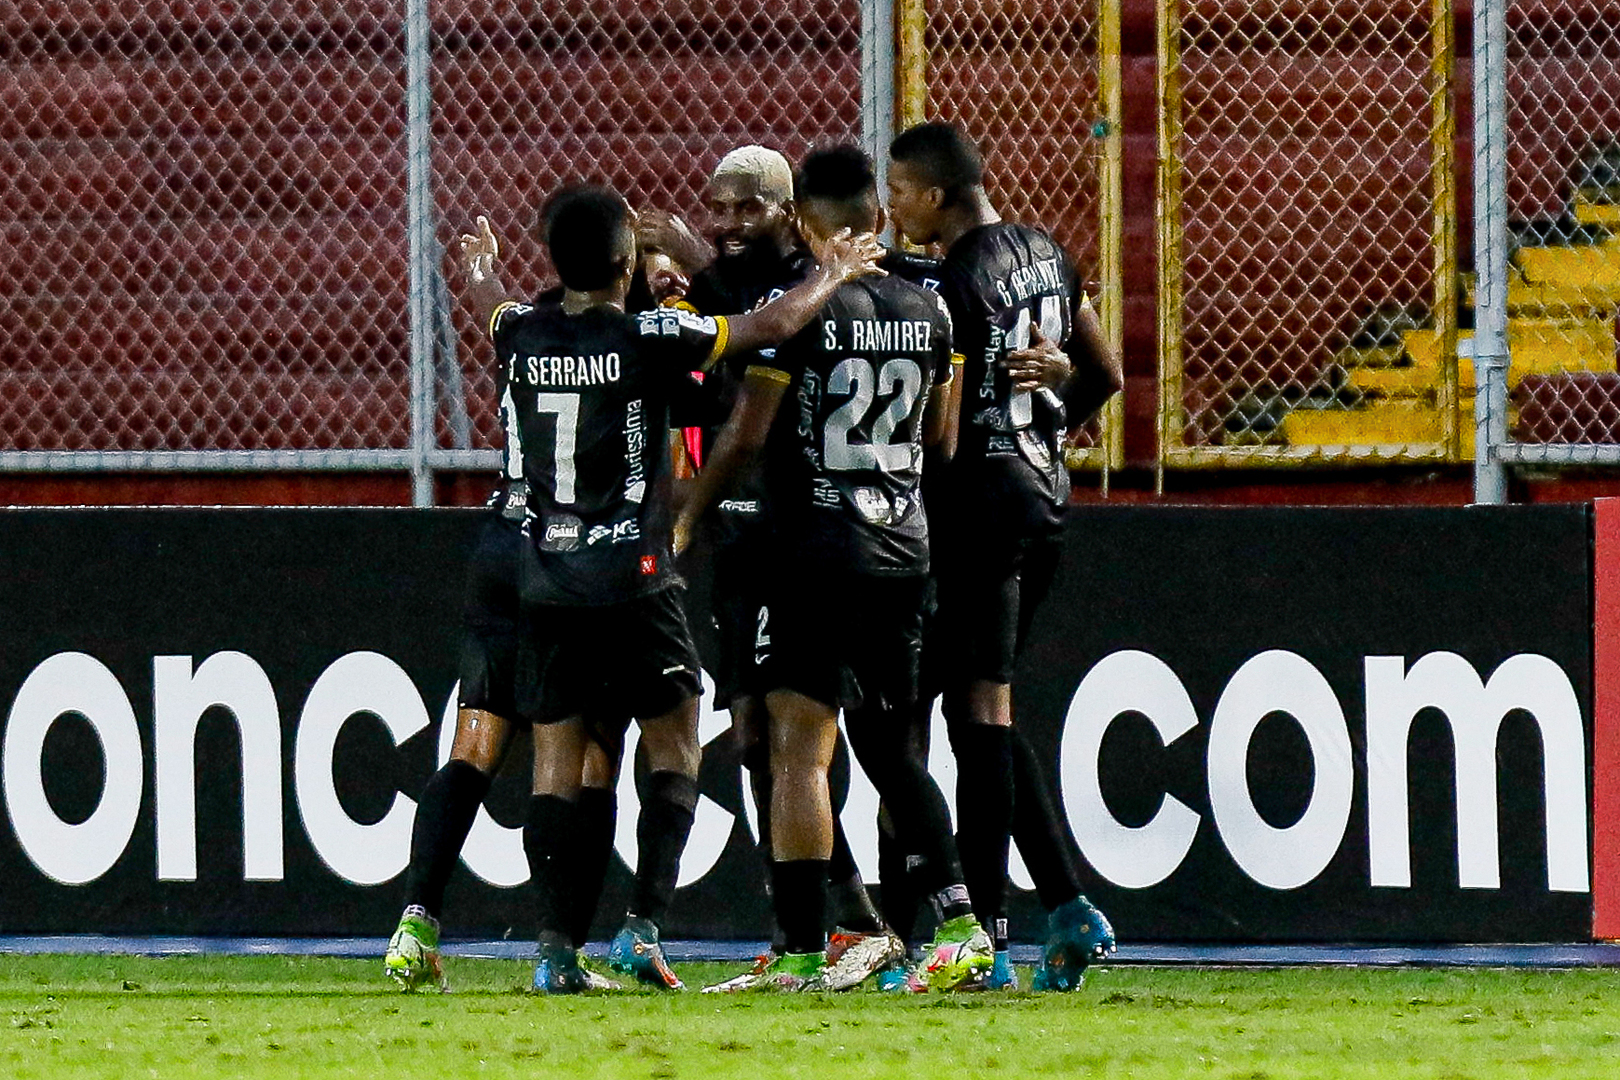 CAI y Real Estelí se enfrentarán de nuevo en las semifinales de la CCAC